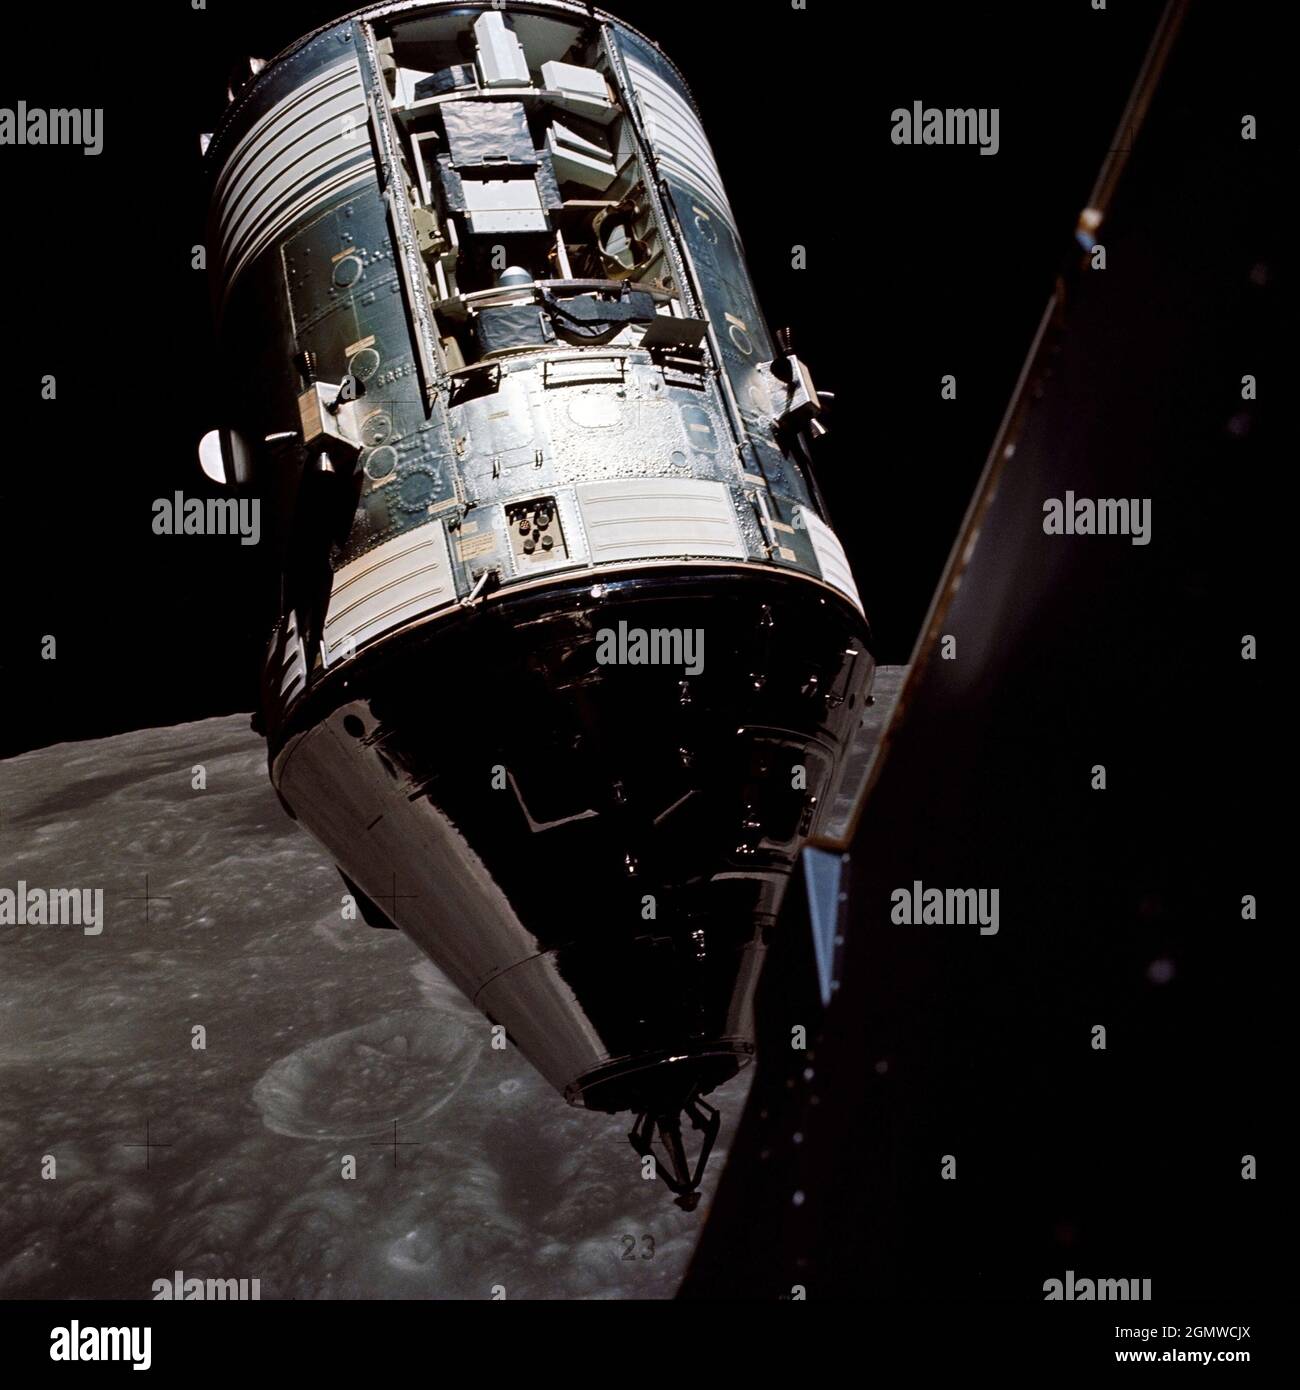 (14. Dez. 1972) --- eine hervorragende Ansicht der Apollo 17 Command and Service Modules (CSM), fotografiert von der Lunar Module (LM) 'Challenger' während des Rendezvous und der Andockmanöver in der Mondumlaufbahn. Die LM-Aufstiegsstufe mit den Astronauten Eugene A. Cernan und Harrison H. Schmitt an Bord war gerade vom Taurus-Littrow-Landeplatz auf der Mondoberfläche zurückgekehrt. Astronaut Ronald E. Evans blieb mit dem CSM in der Mondumlaufbahn. Beachten Sie den freiliegenden SIM-Schacht (Scientific Instrument Module) in Sektor 1 des Service-Moduls (SM). Drei Experimente werden in der SIM-Bucht durchgeführt: S-209 Mondschallgeber, S-171 Infrare Stockfoto